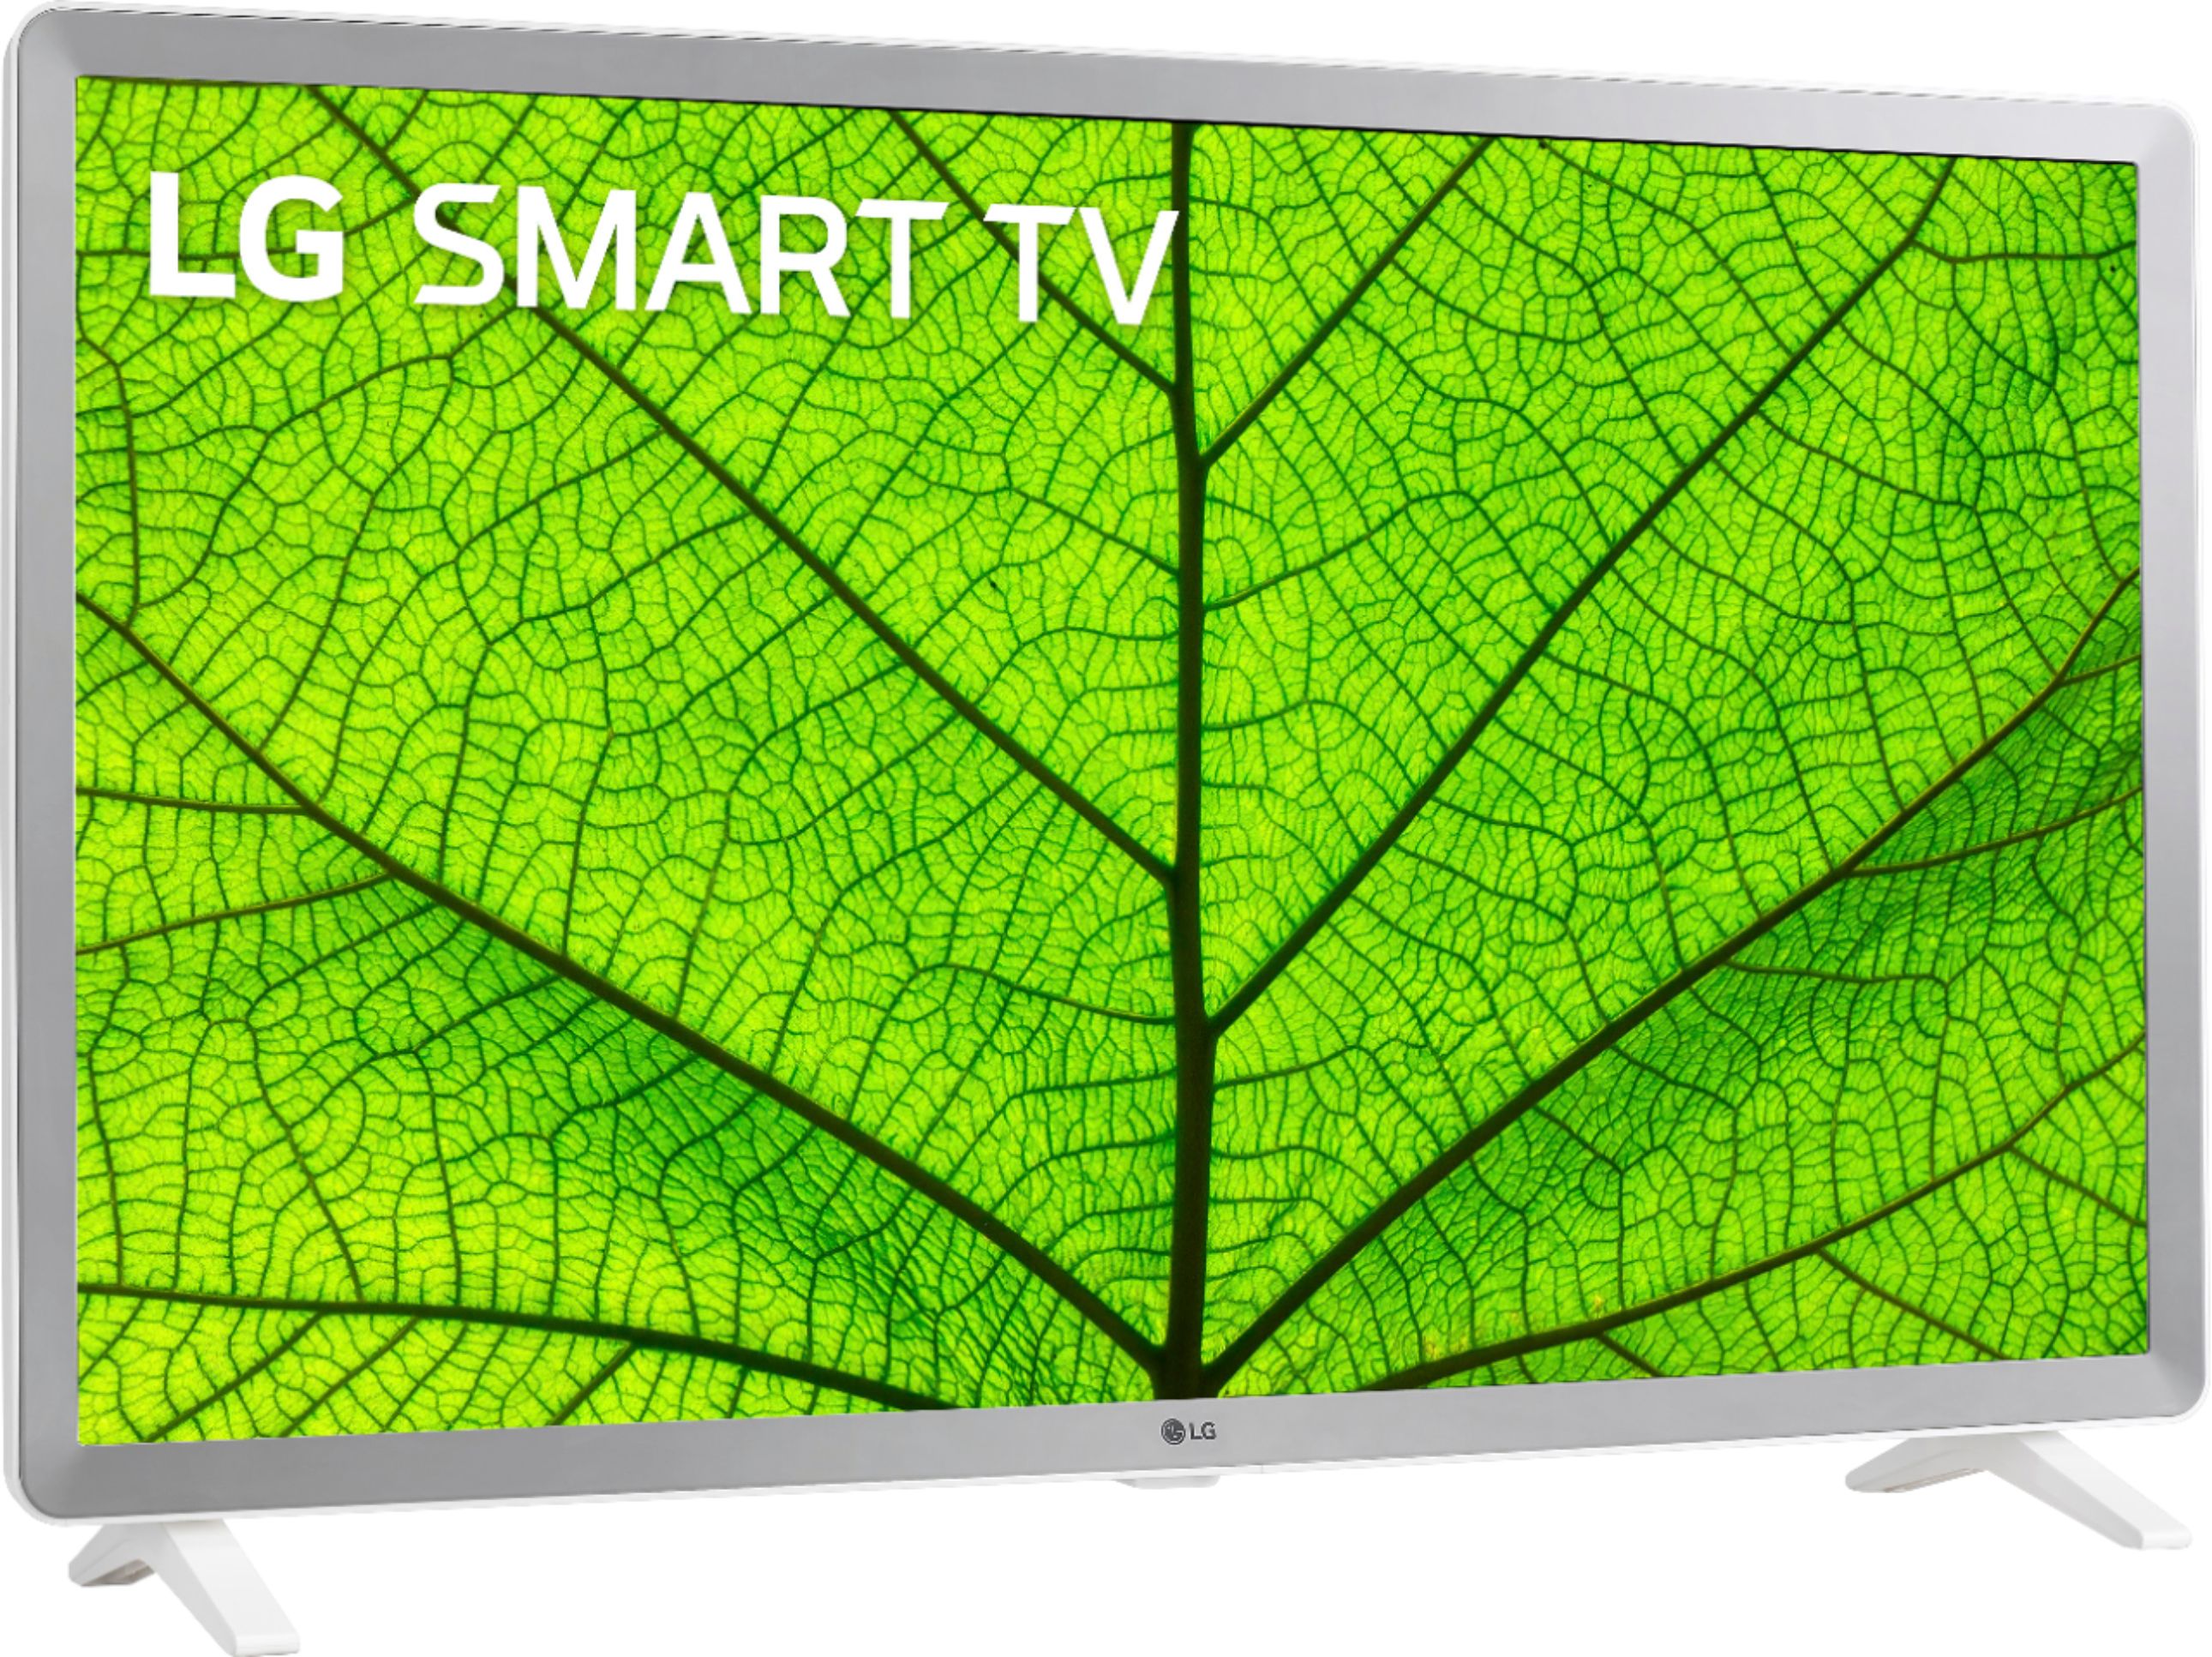 Buy: LG 32" Class LED HD Smart TV